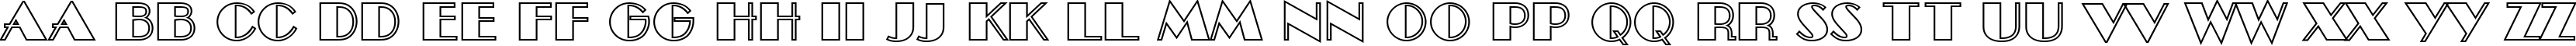 Пример написания английского алфавита шрифтом a_BentTitulOtl